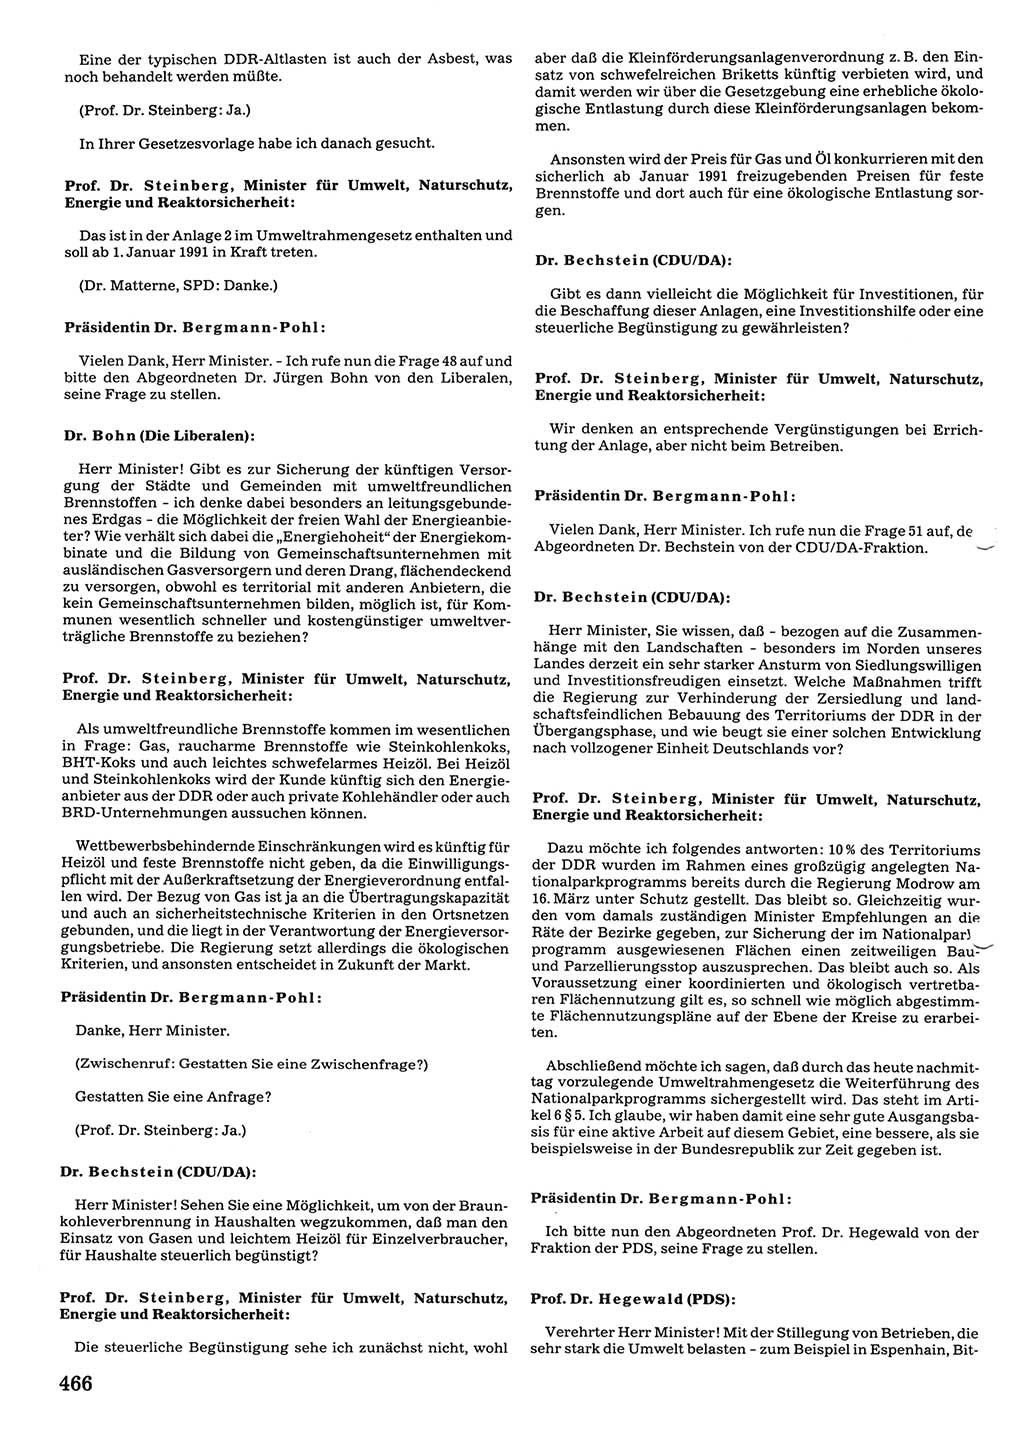 Tagungen der Volkskammer (VK) der Deutschen Demokratischen Republik (DDR), 10. Wahlperiode 1990, Seite 466 (VK. DDR 10. WP. 1990, Prot. Tg. 1-38, 5.4.-2.10.1990, S. 466)